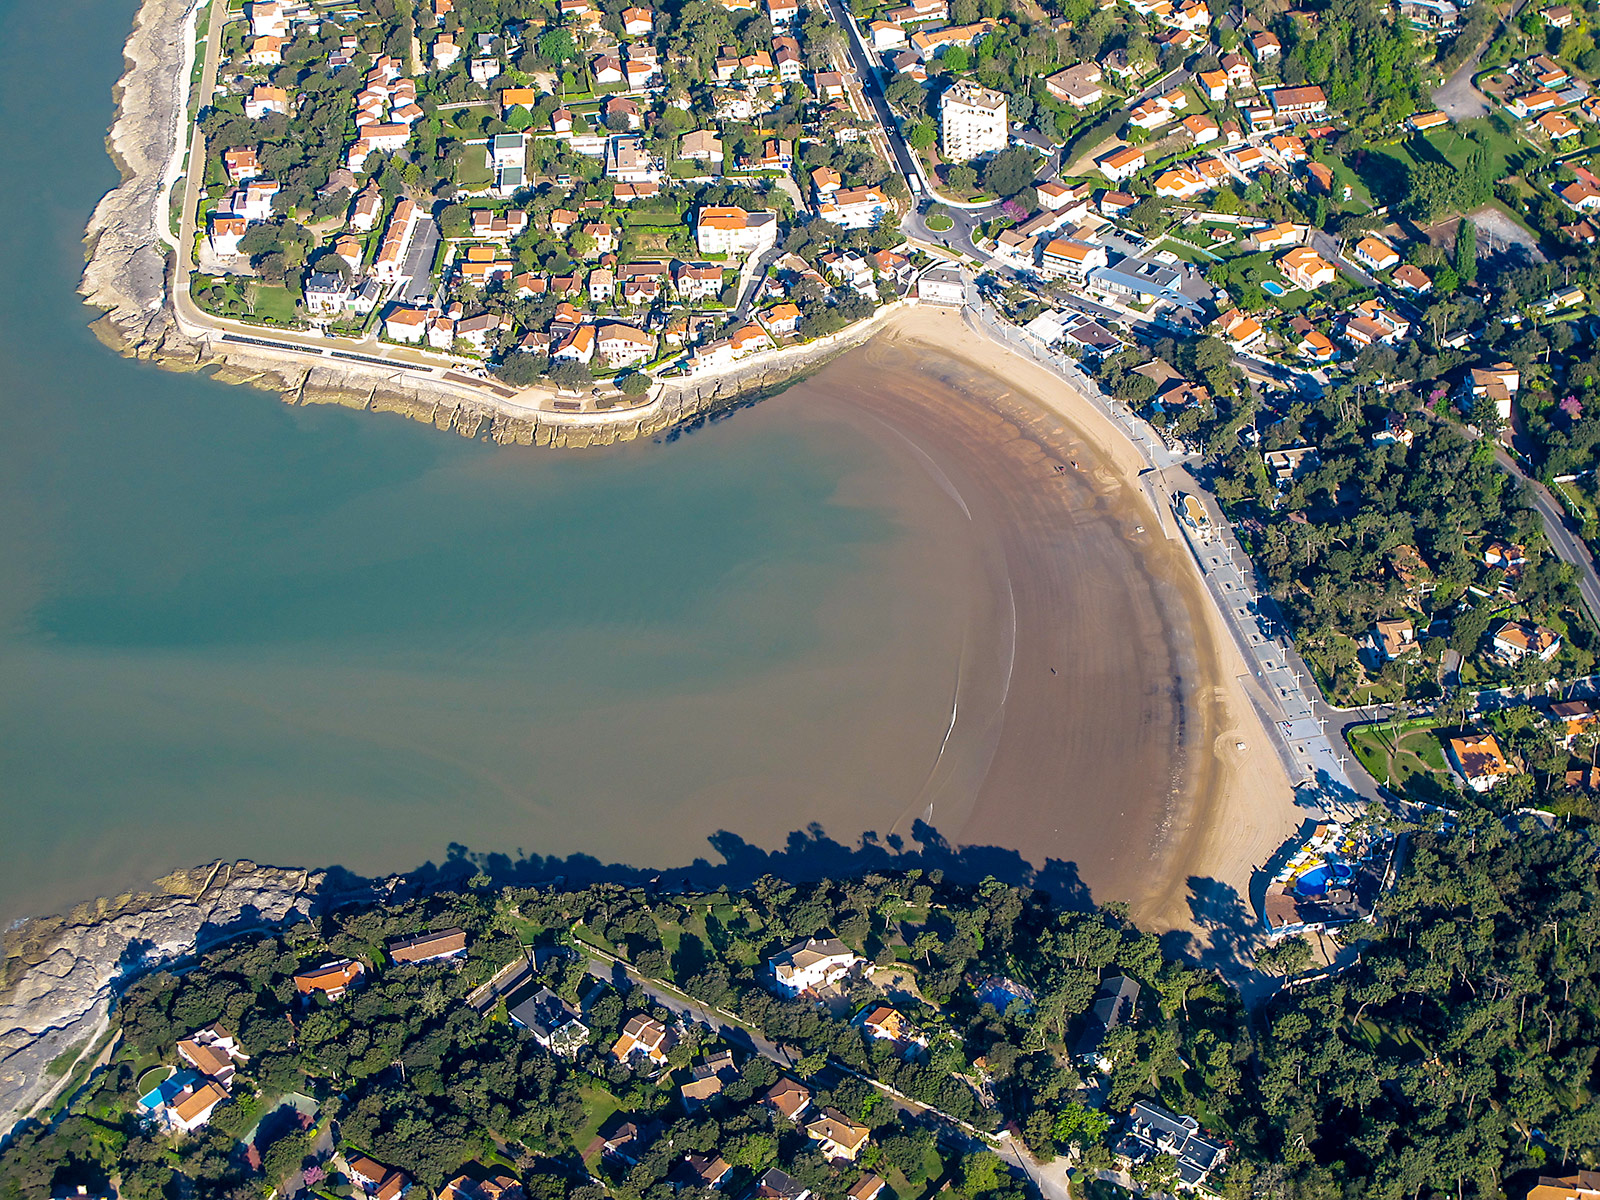 les plages urbaines : la conche de Nauzan à Vaux-sur-Mer